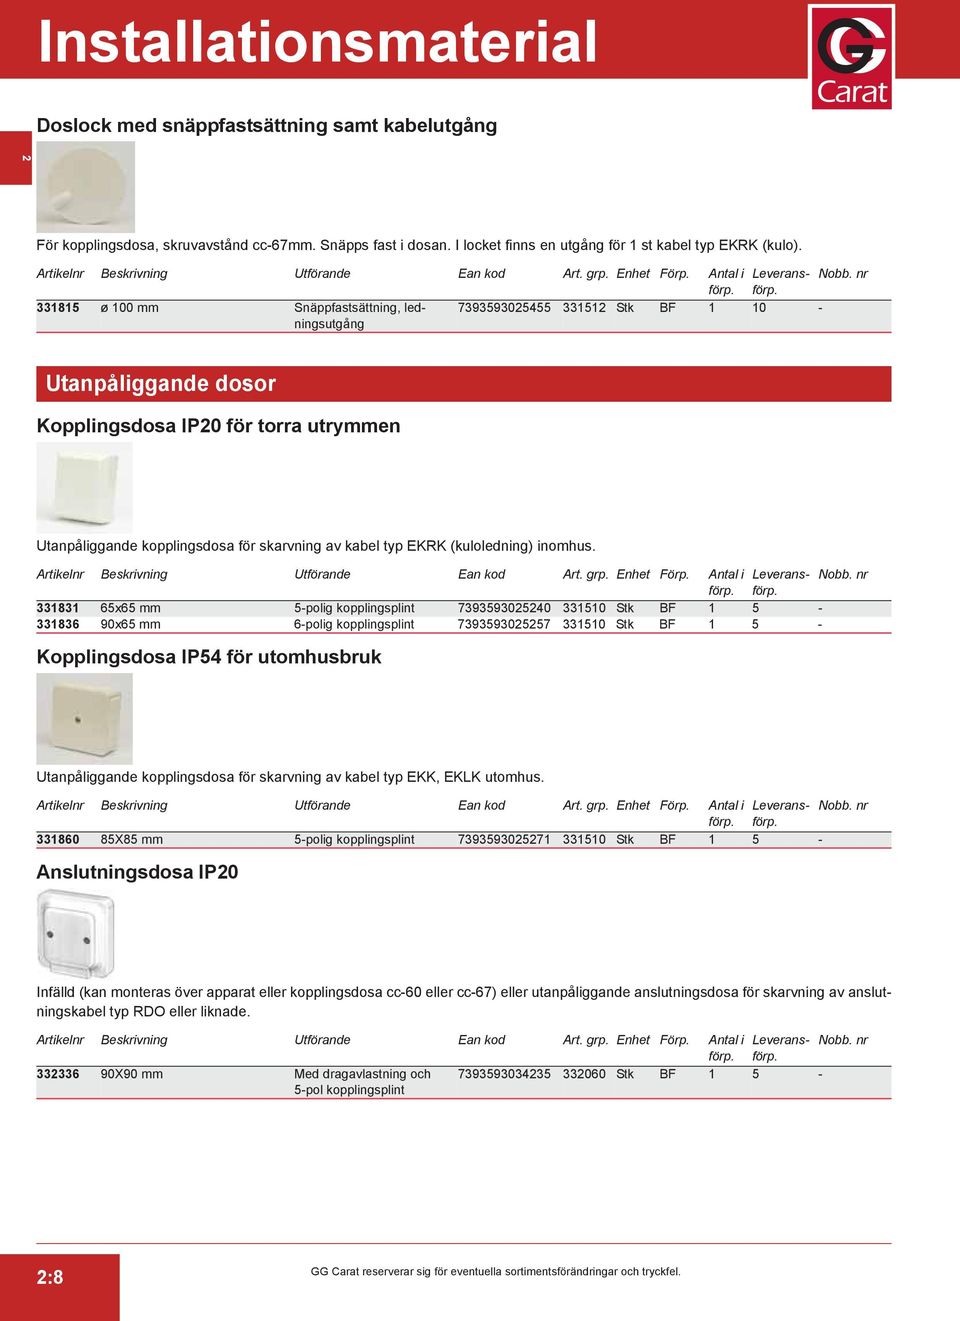 Kopplingsdosa IP54 för utomhusbruk Anslutningsdosa IP20 Infälld (kan monteras över apparat eller kopplingsdosa cc-60 eller cc-67) eller utanpåliggande anslutningsdosa för skarvning av